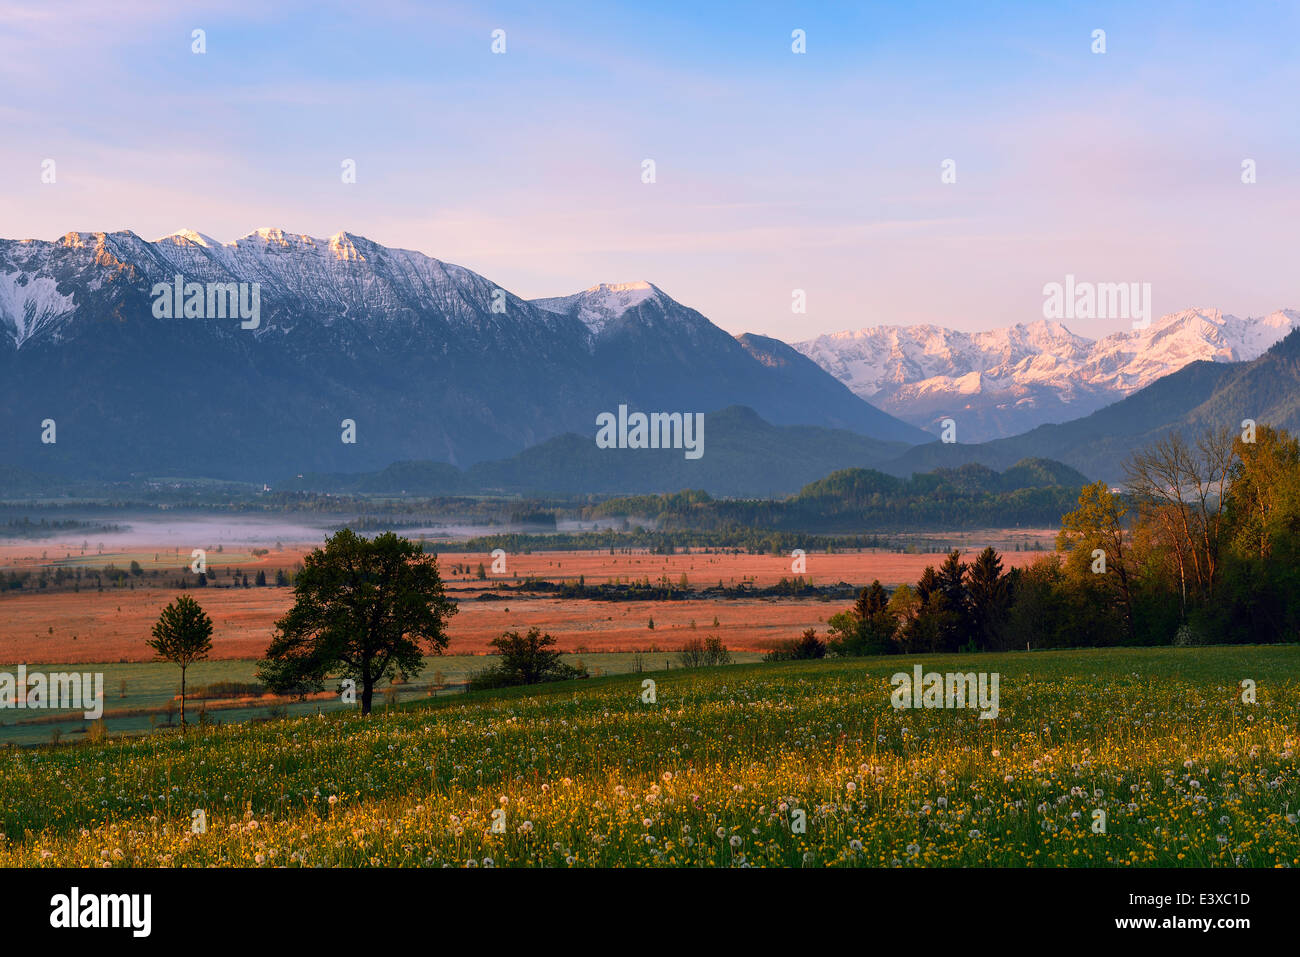 Morning atmosphere in Murnau Moor, Murnauer Moos, Ester Mountains, Murnau, Blaues Land region, Upper Bavaria, Bavaria, Germany Stock Photo